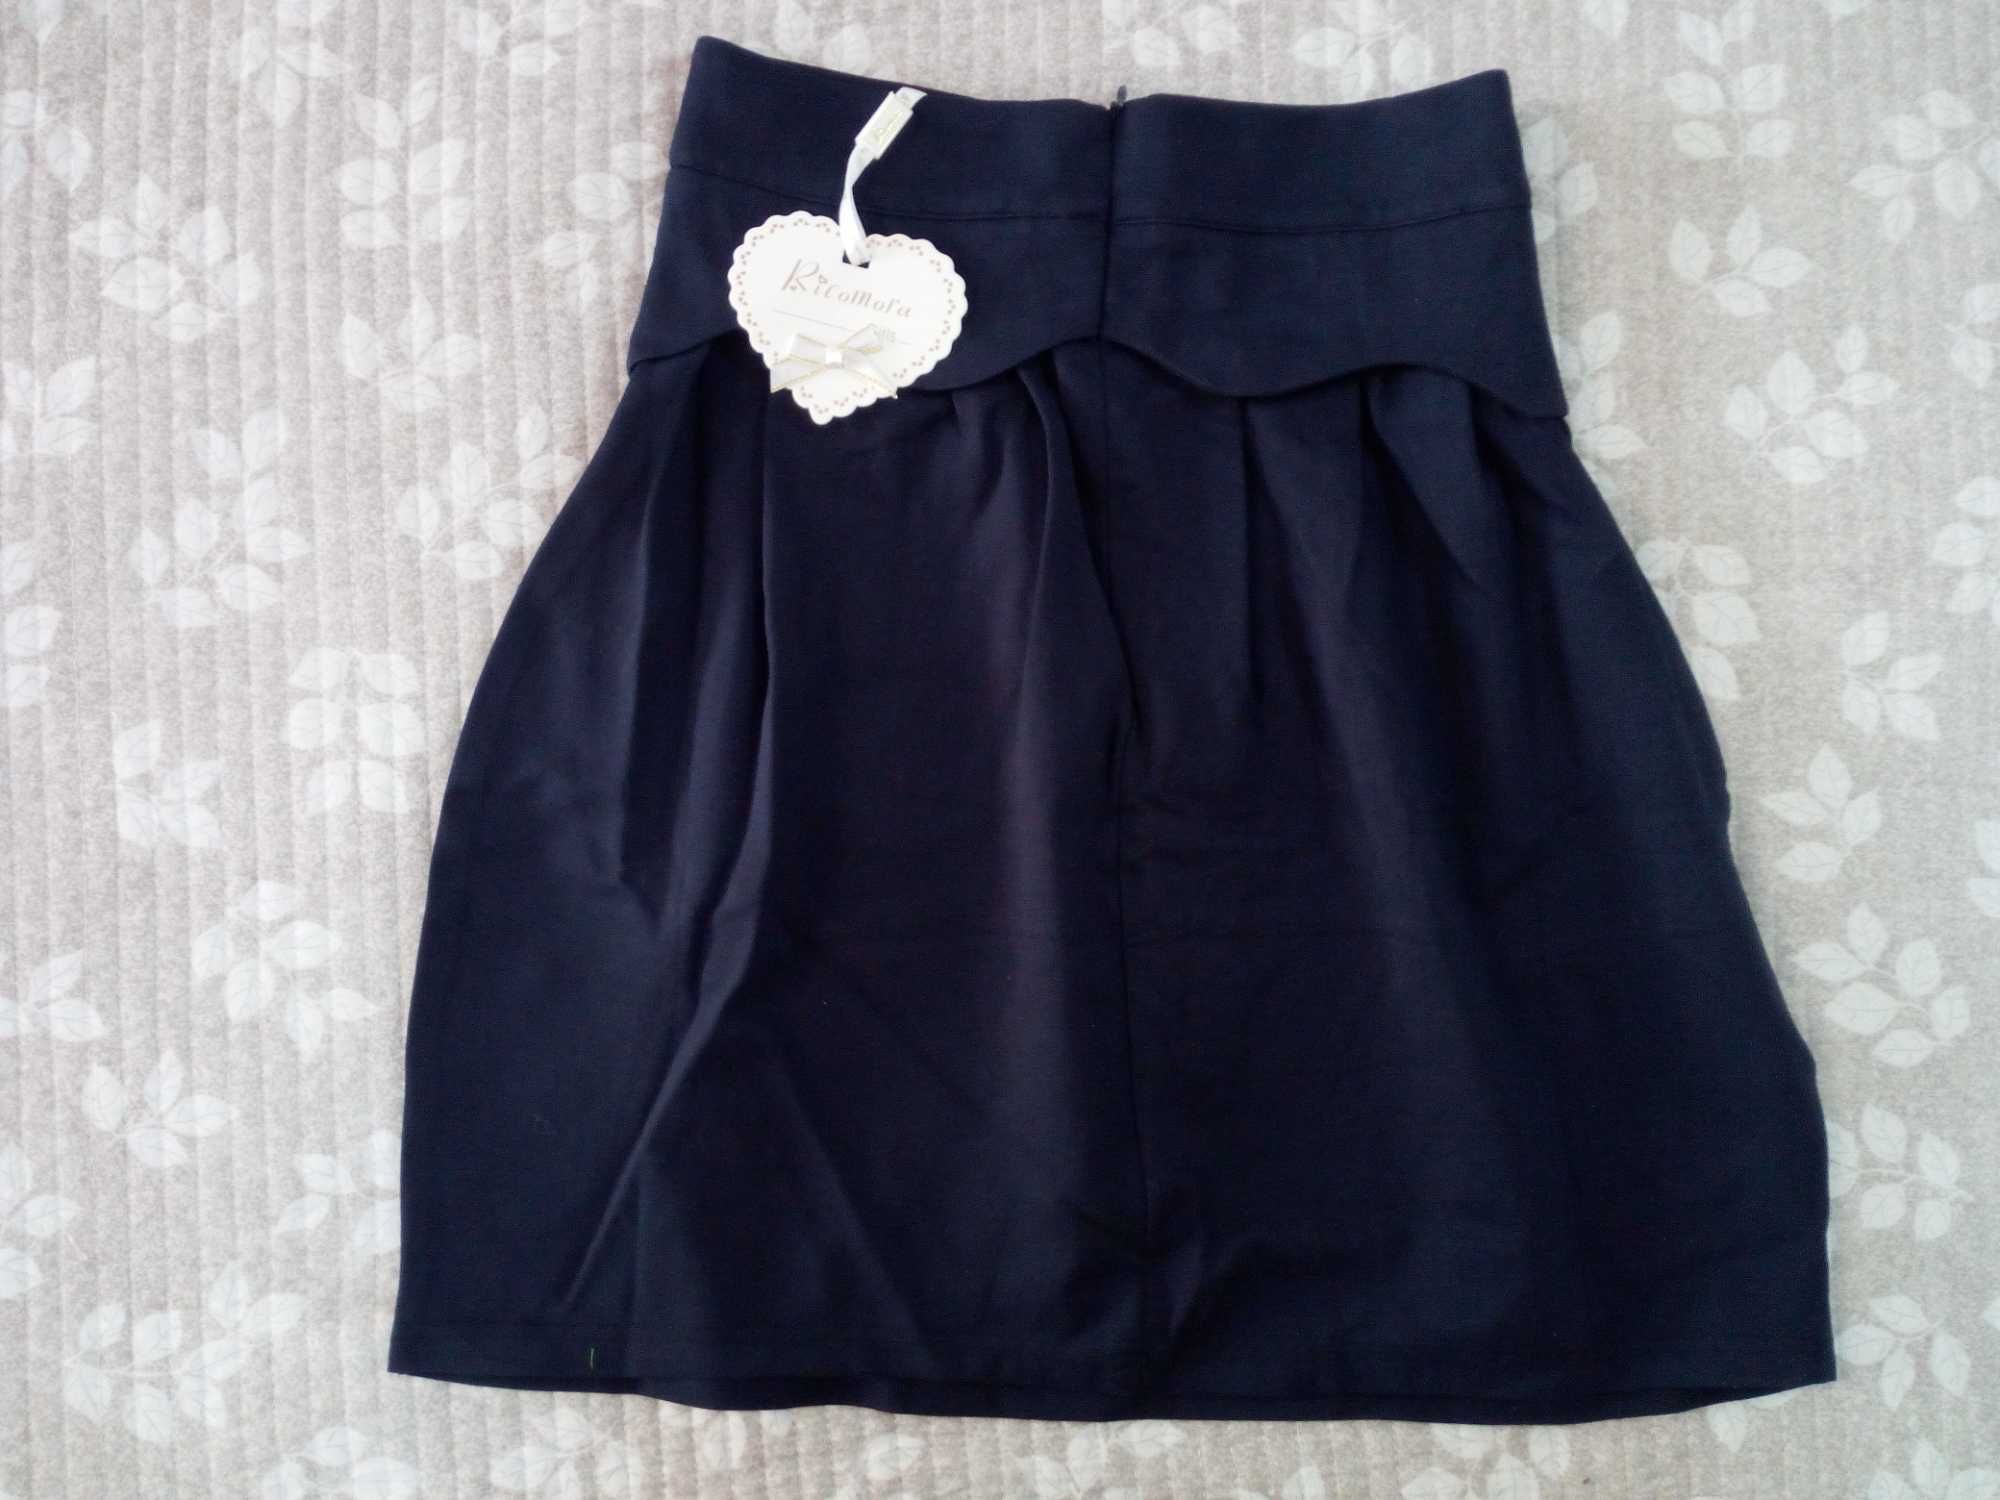 Продам юбку НОВАЯ (с этикеткой), размер 128-158, тёмно синего цвета,